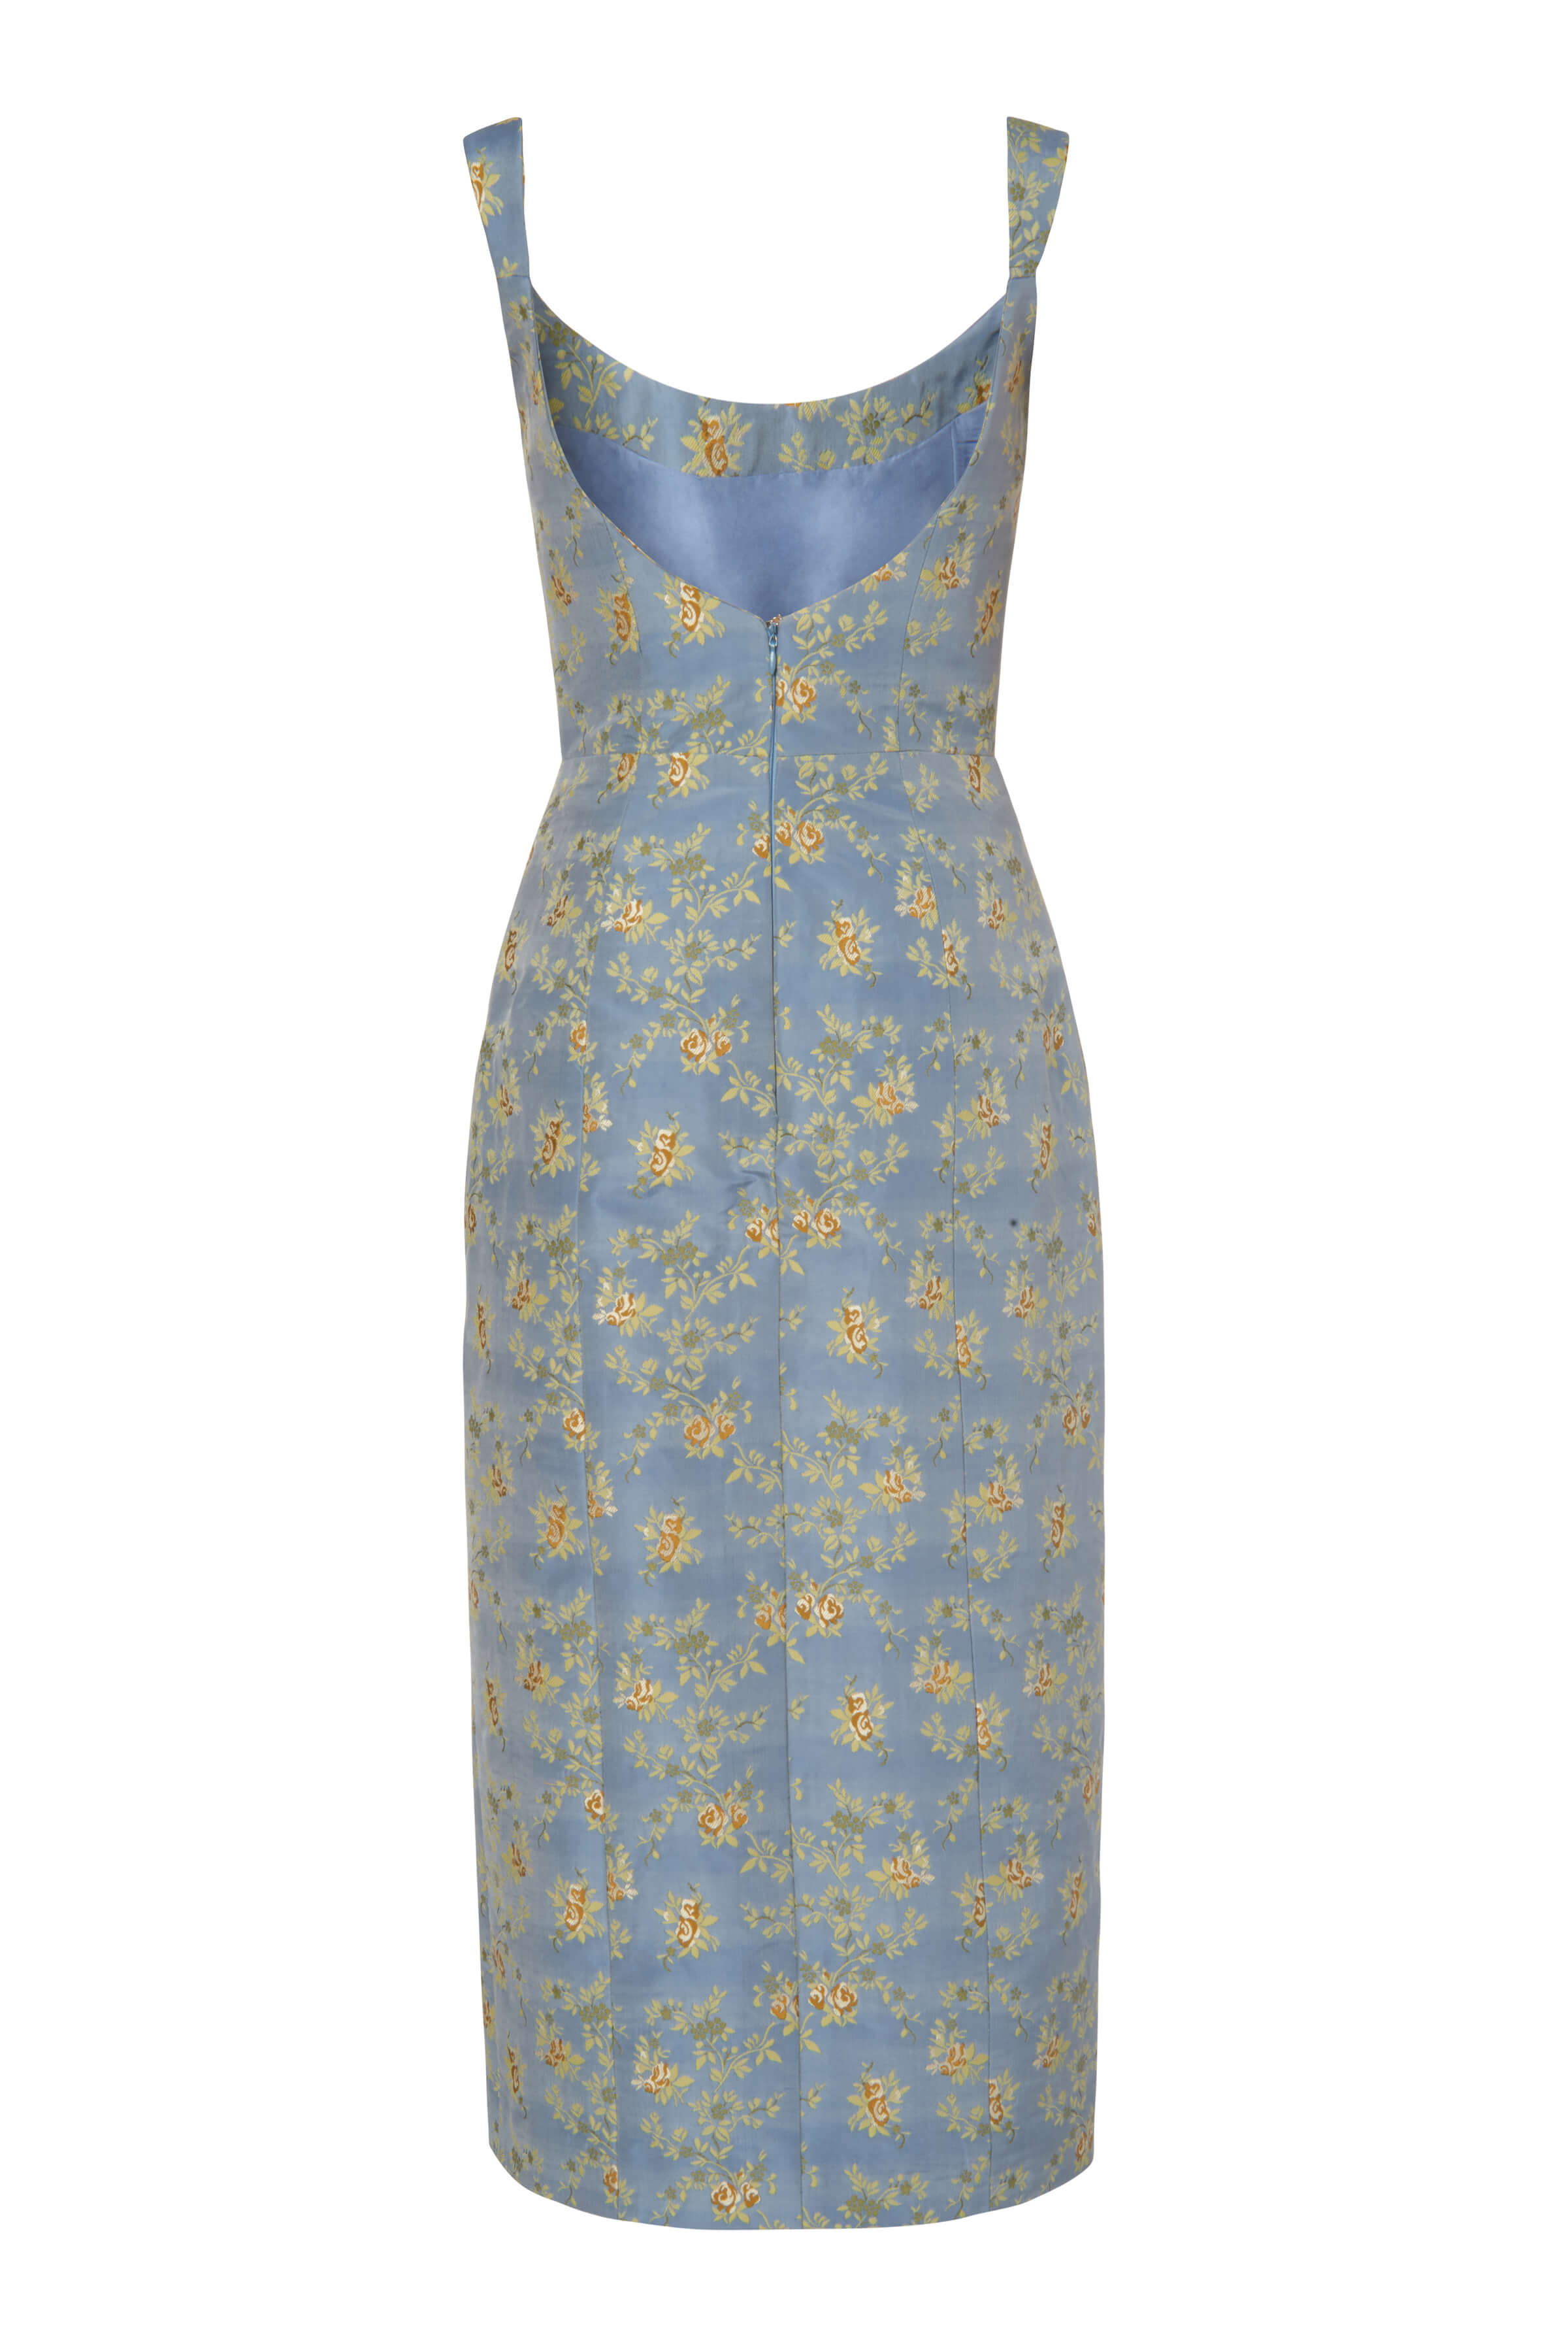 Claudette Blue Floral Corset Dress